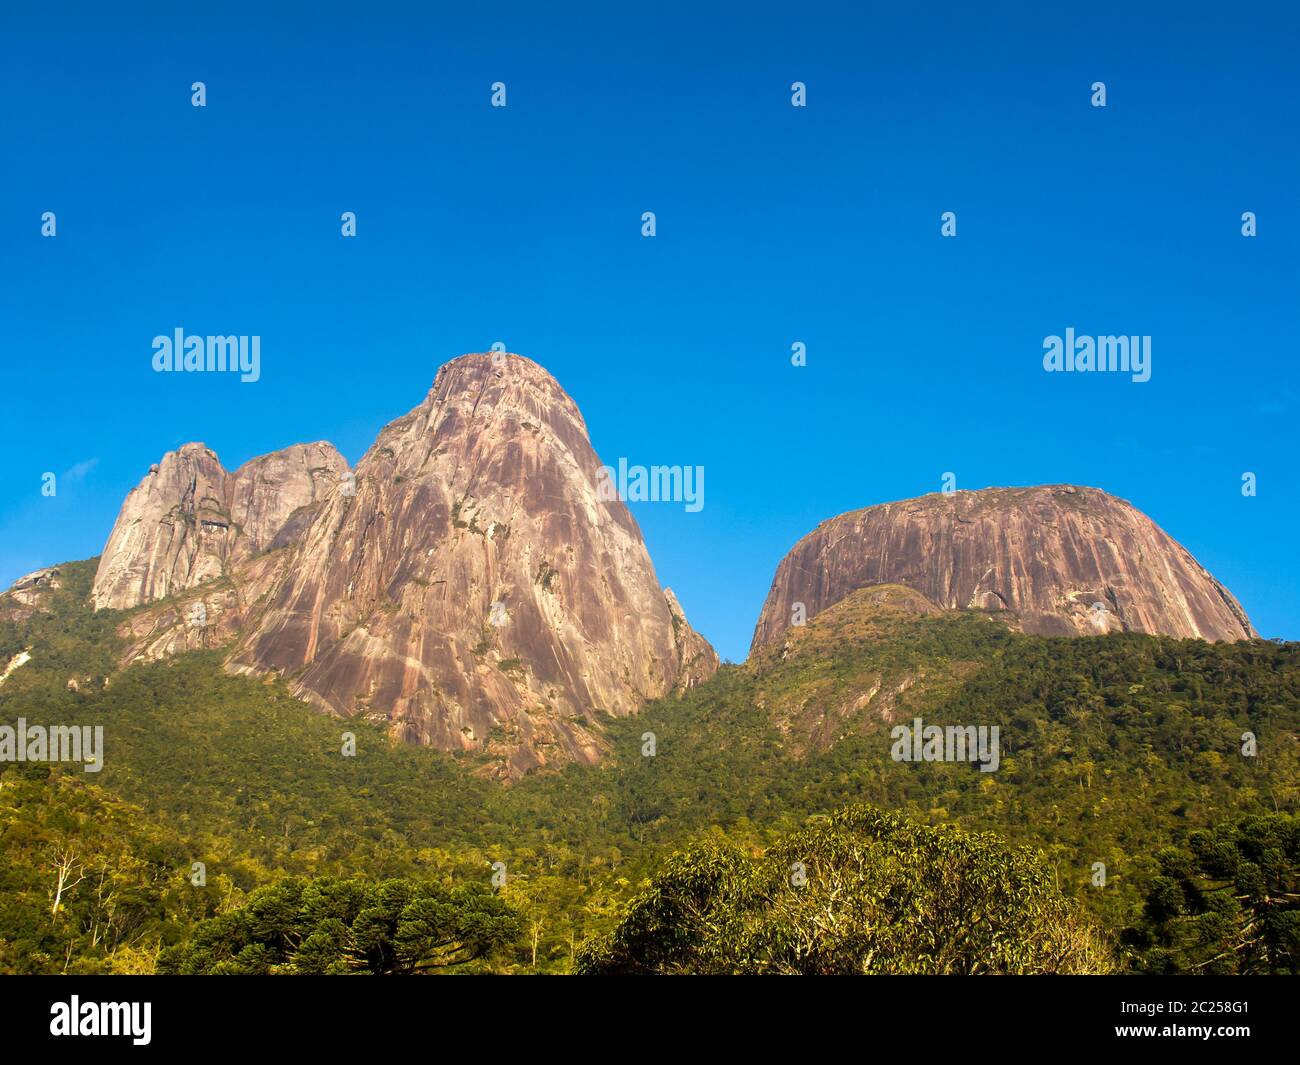 Rock mountains in up country Rio de Janeiro Stock Photo